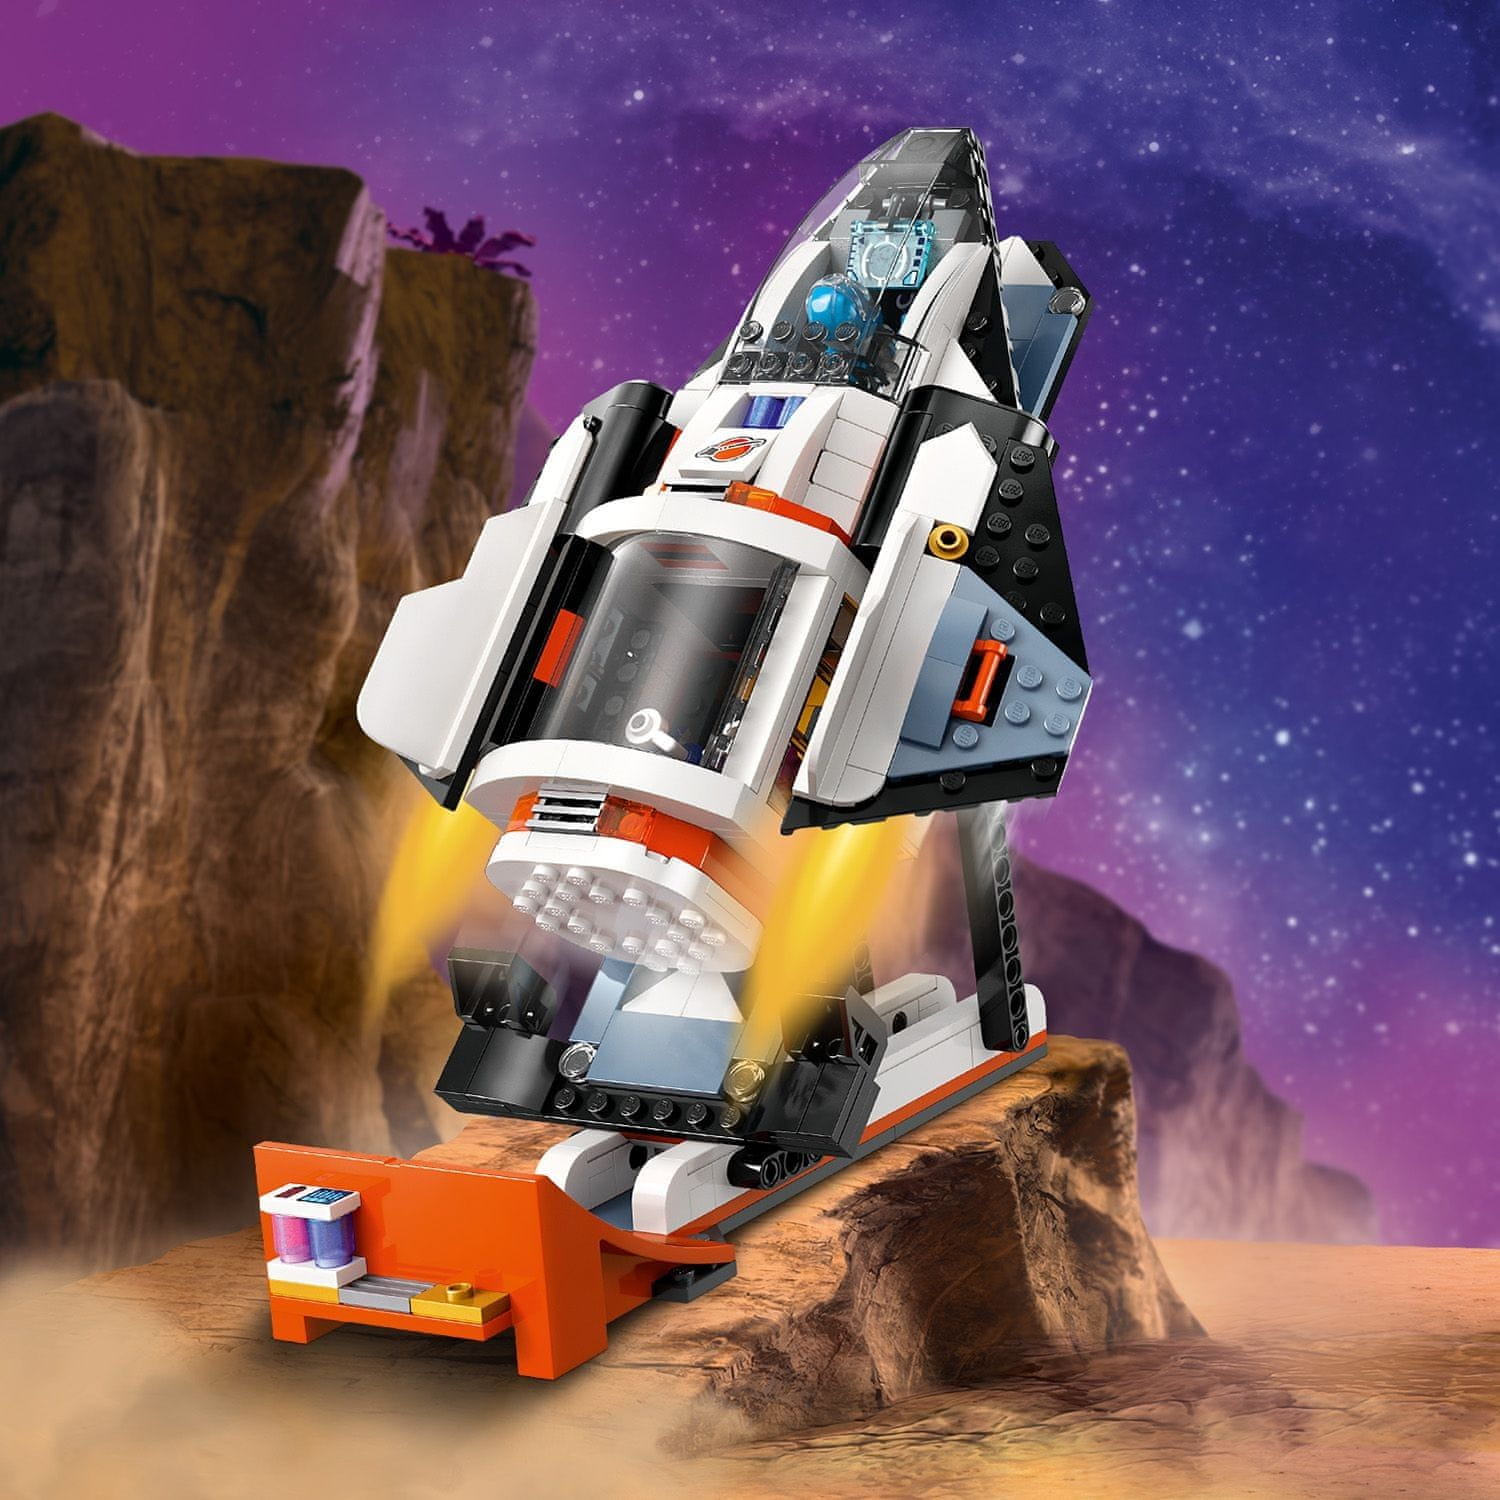 LEGO City 60434 Vesmírná základna a startovací rampa pro raketu